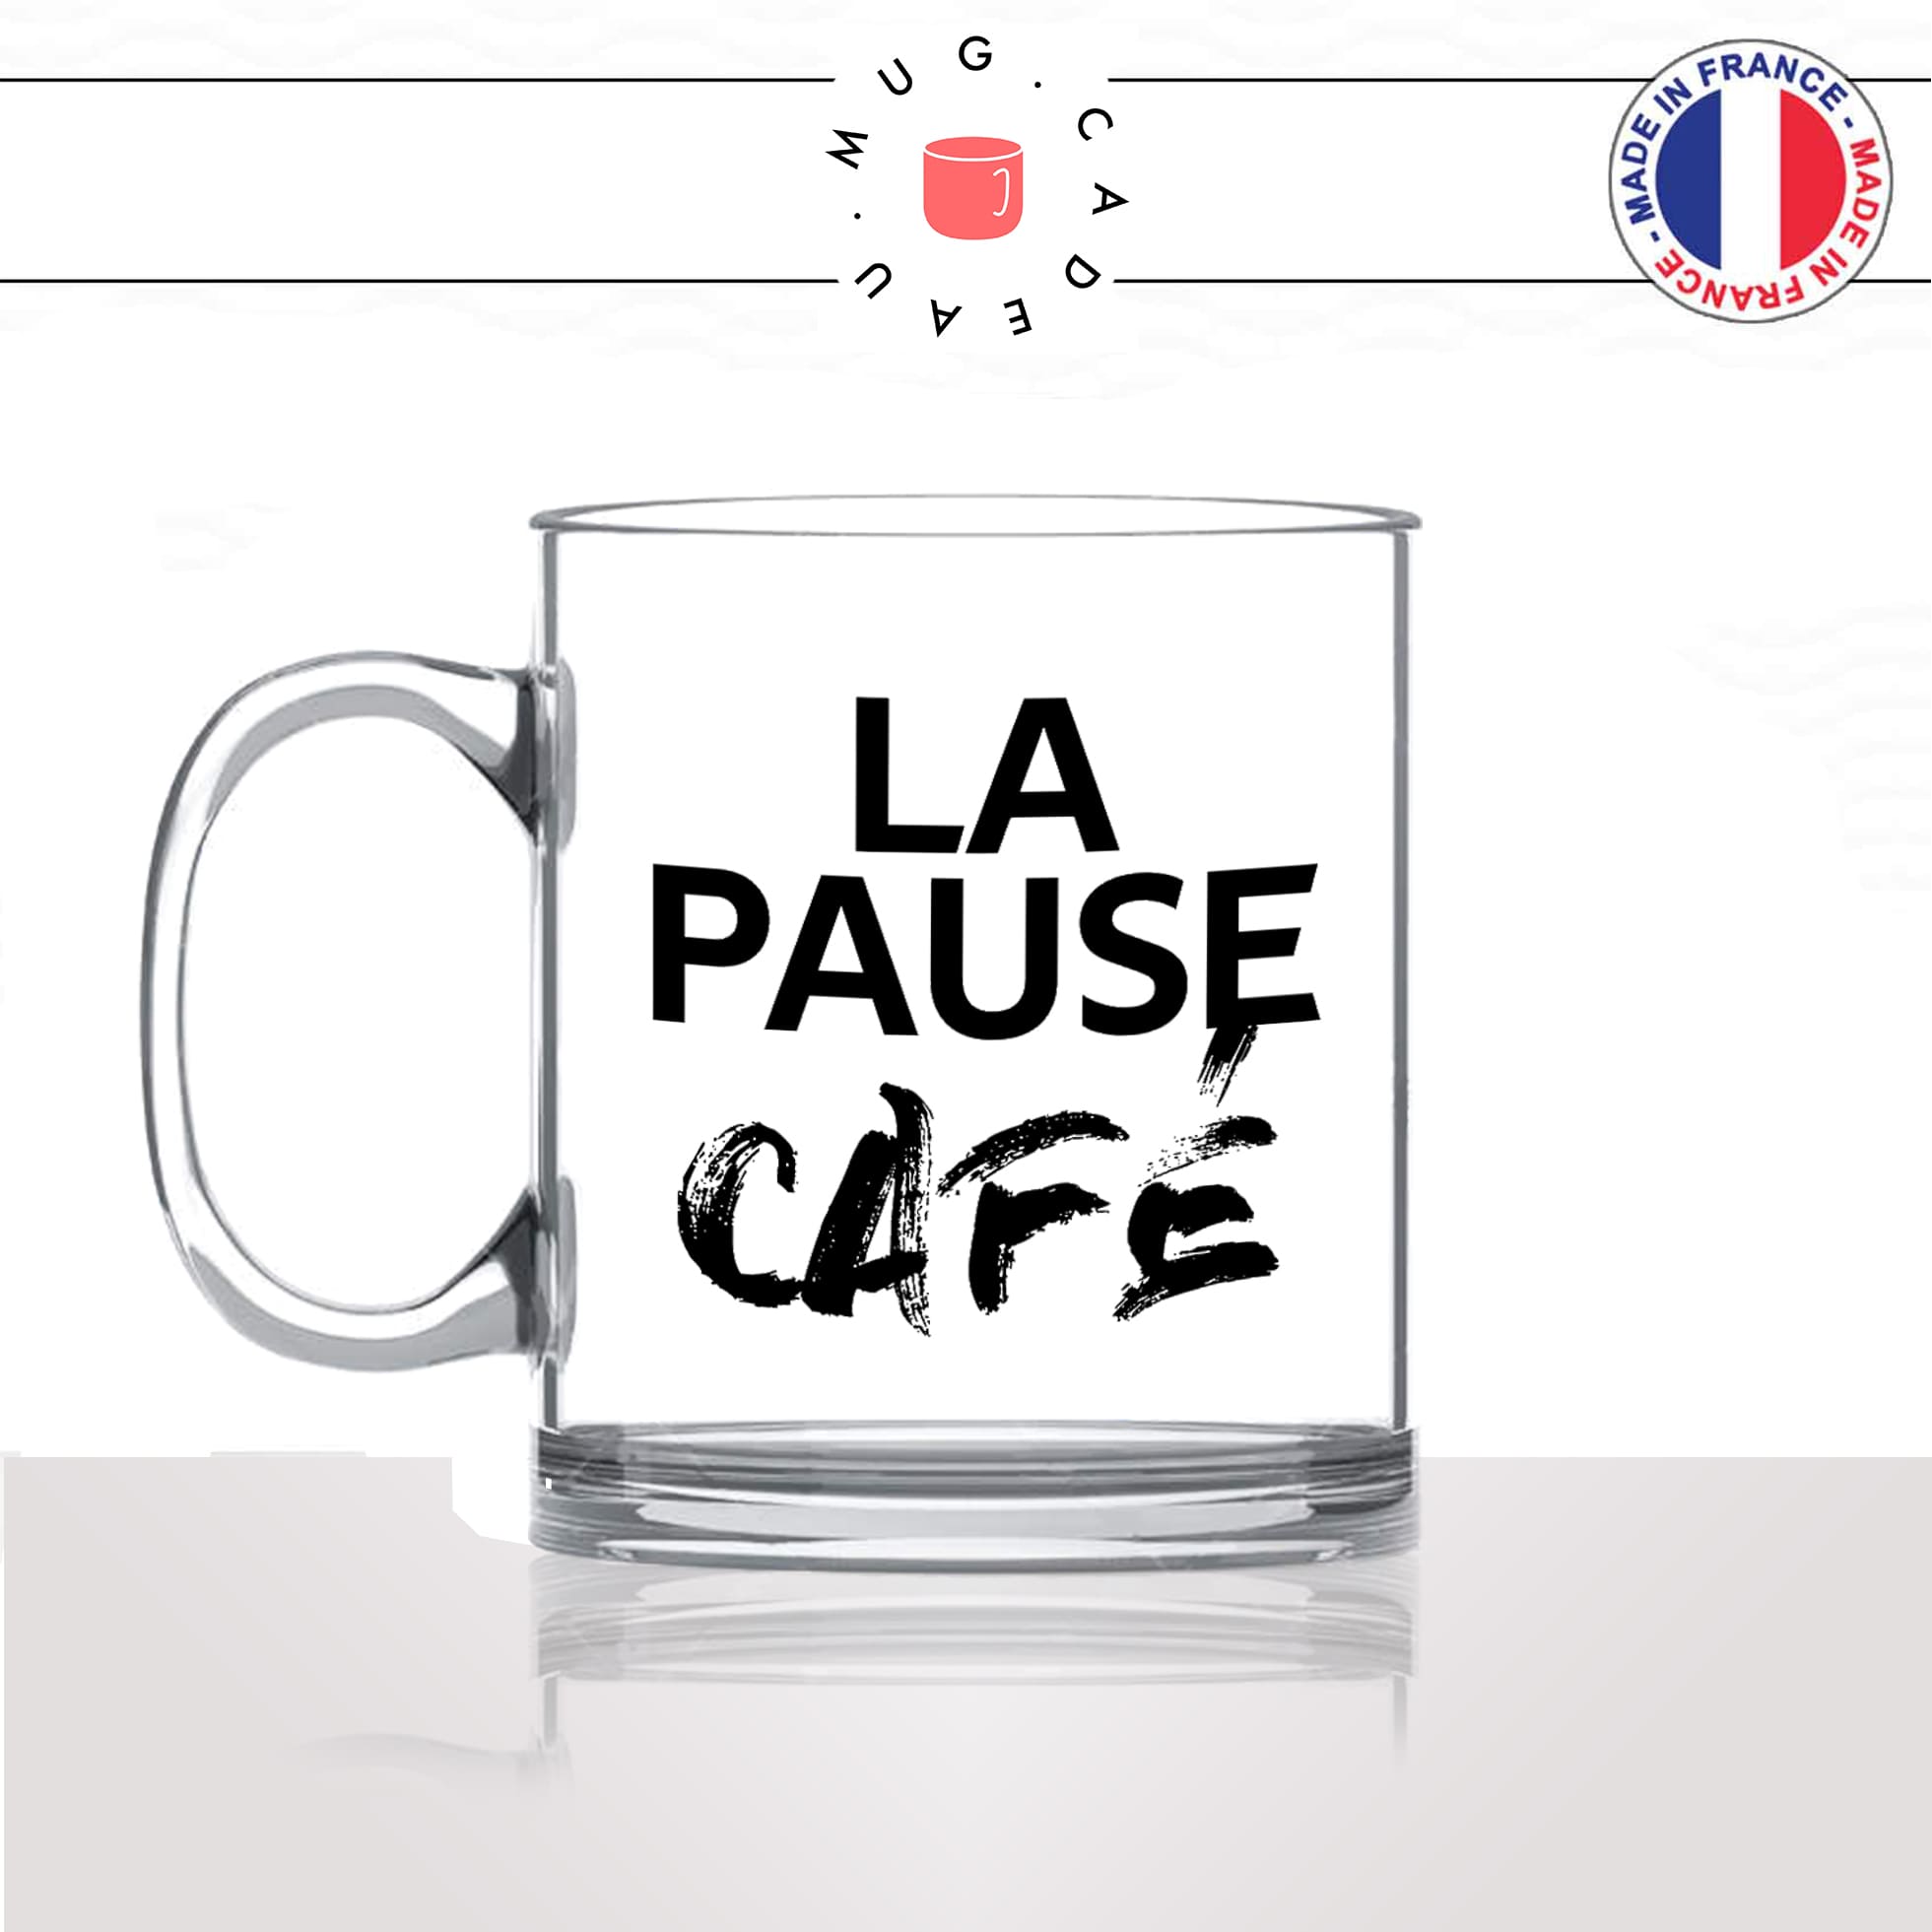 mug-tasse-en-verre-transparent-glass-la-pause-café-thé-collegue-travail-boulot-homme-femme-accro-humour-fun-idée-cadeau-originale-cool